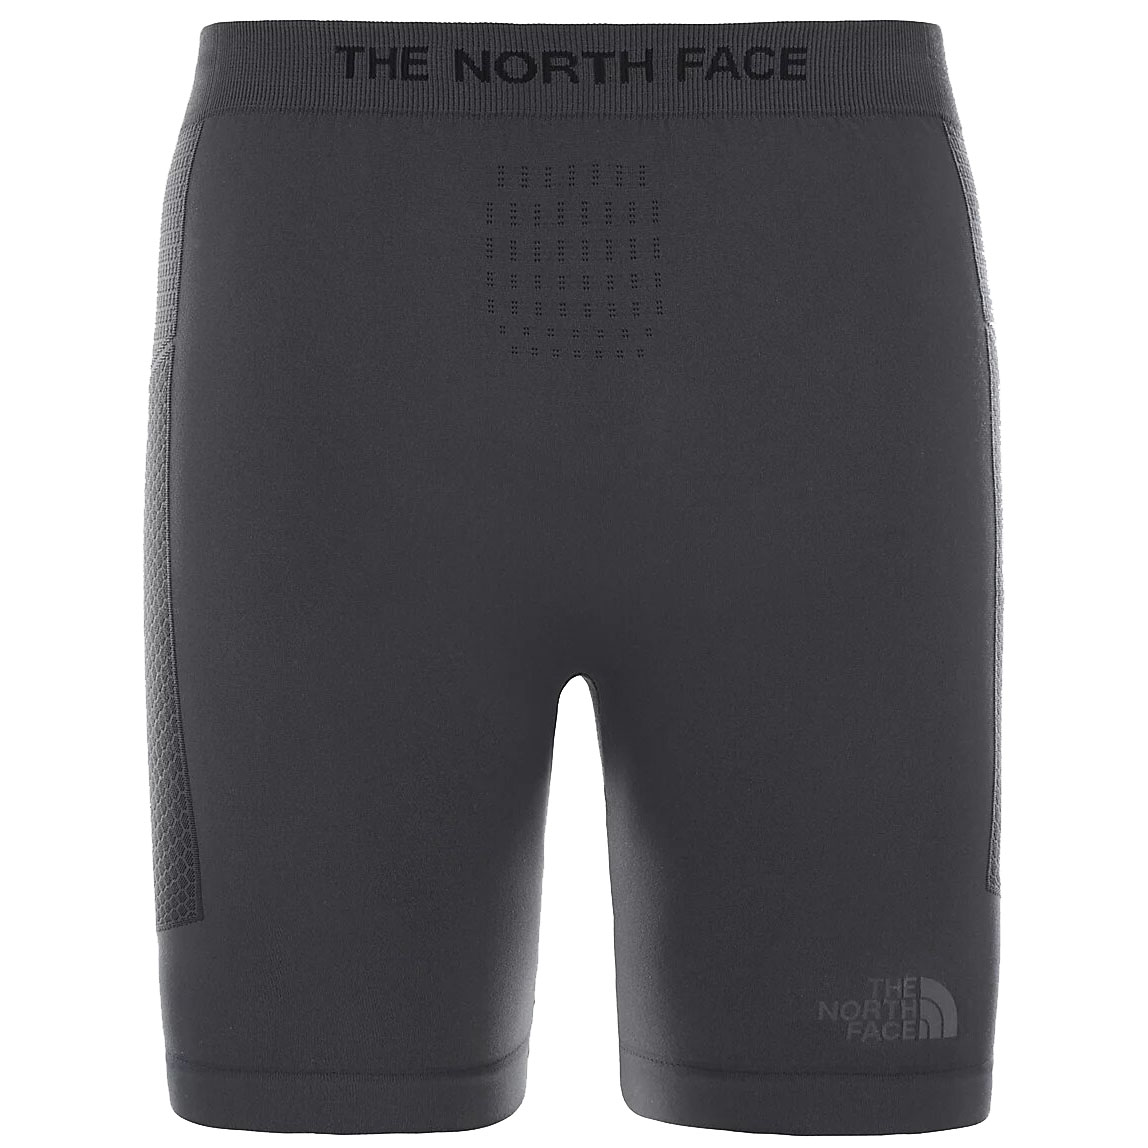 north face boxer shorts